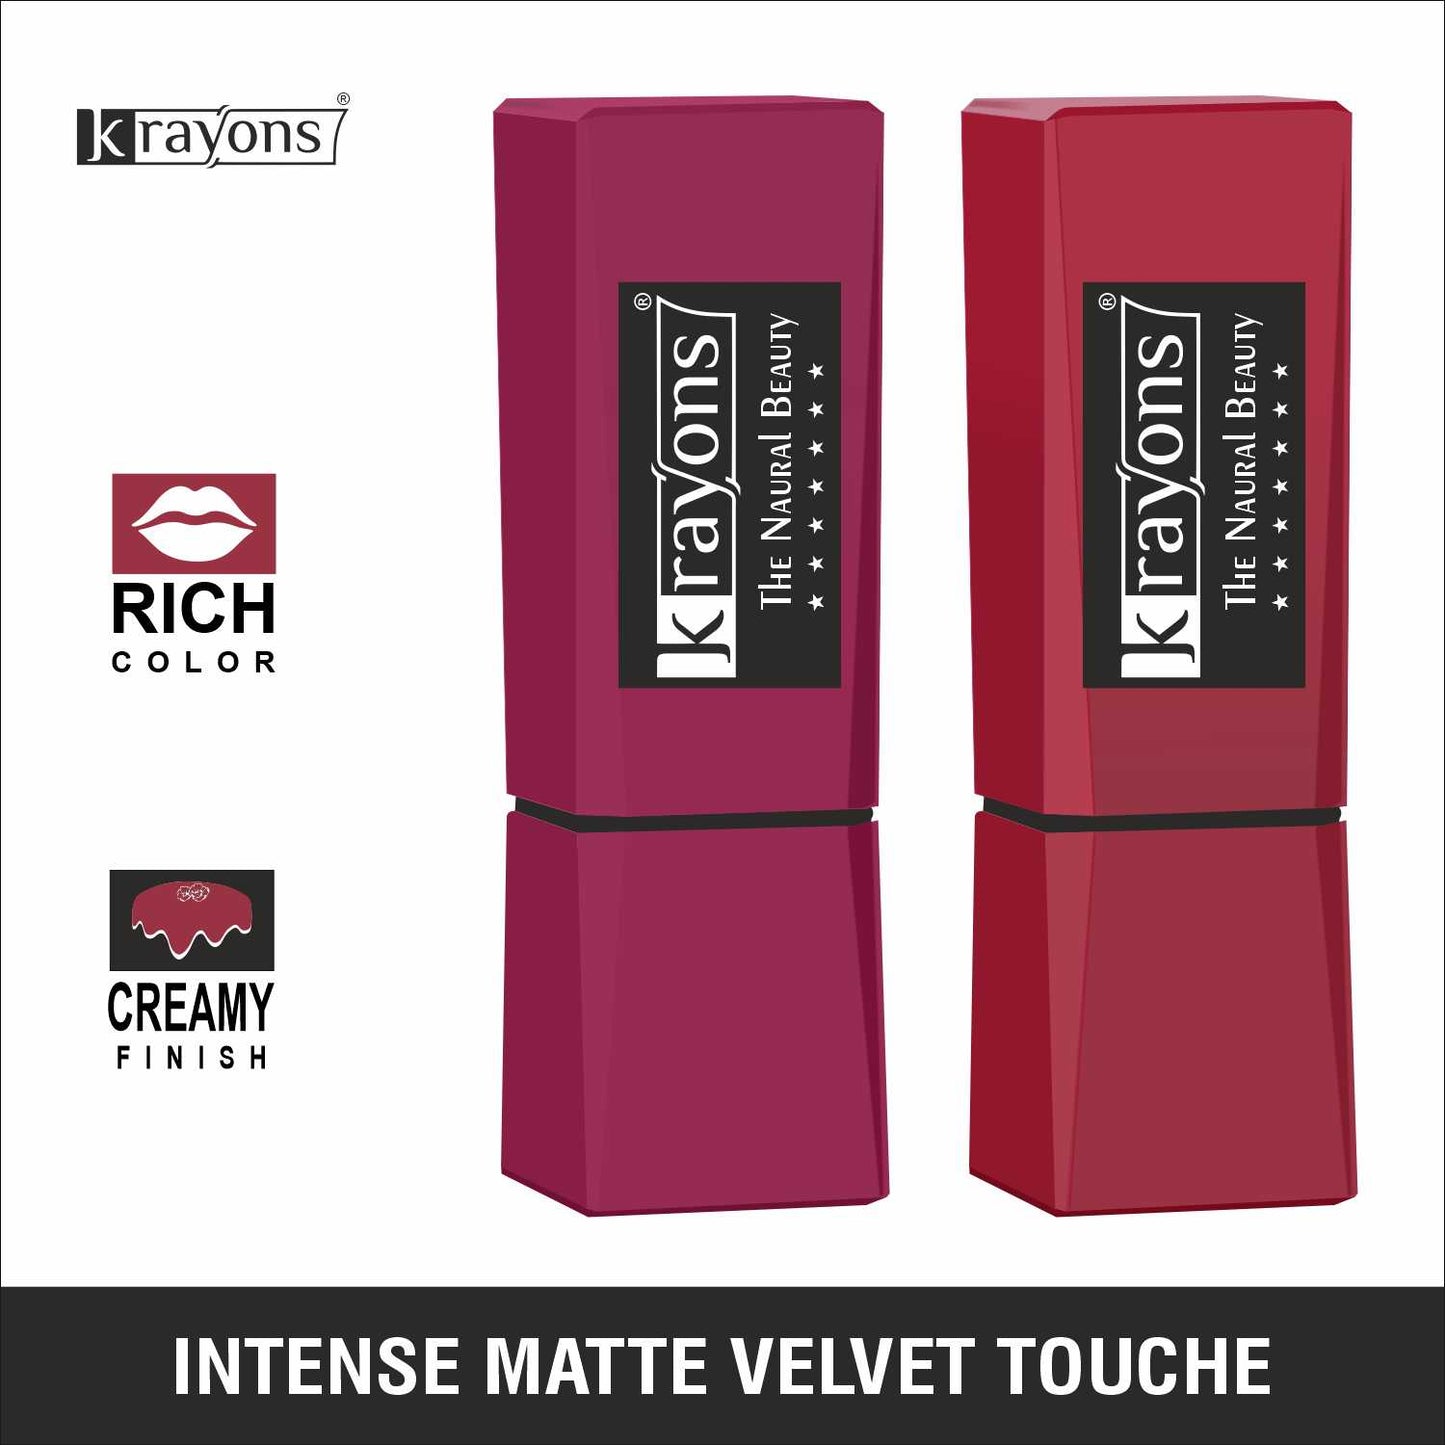 Krayons Intense Matte Lipstick, Waterproof, Longlasting, Rose Red, Scarlet Red, 3.5gm Each (Pack of 2)